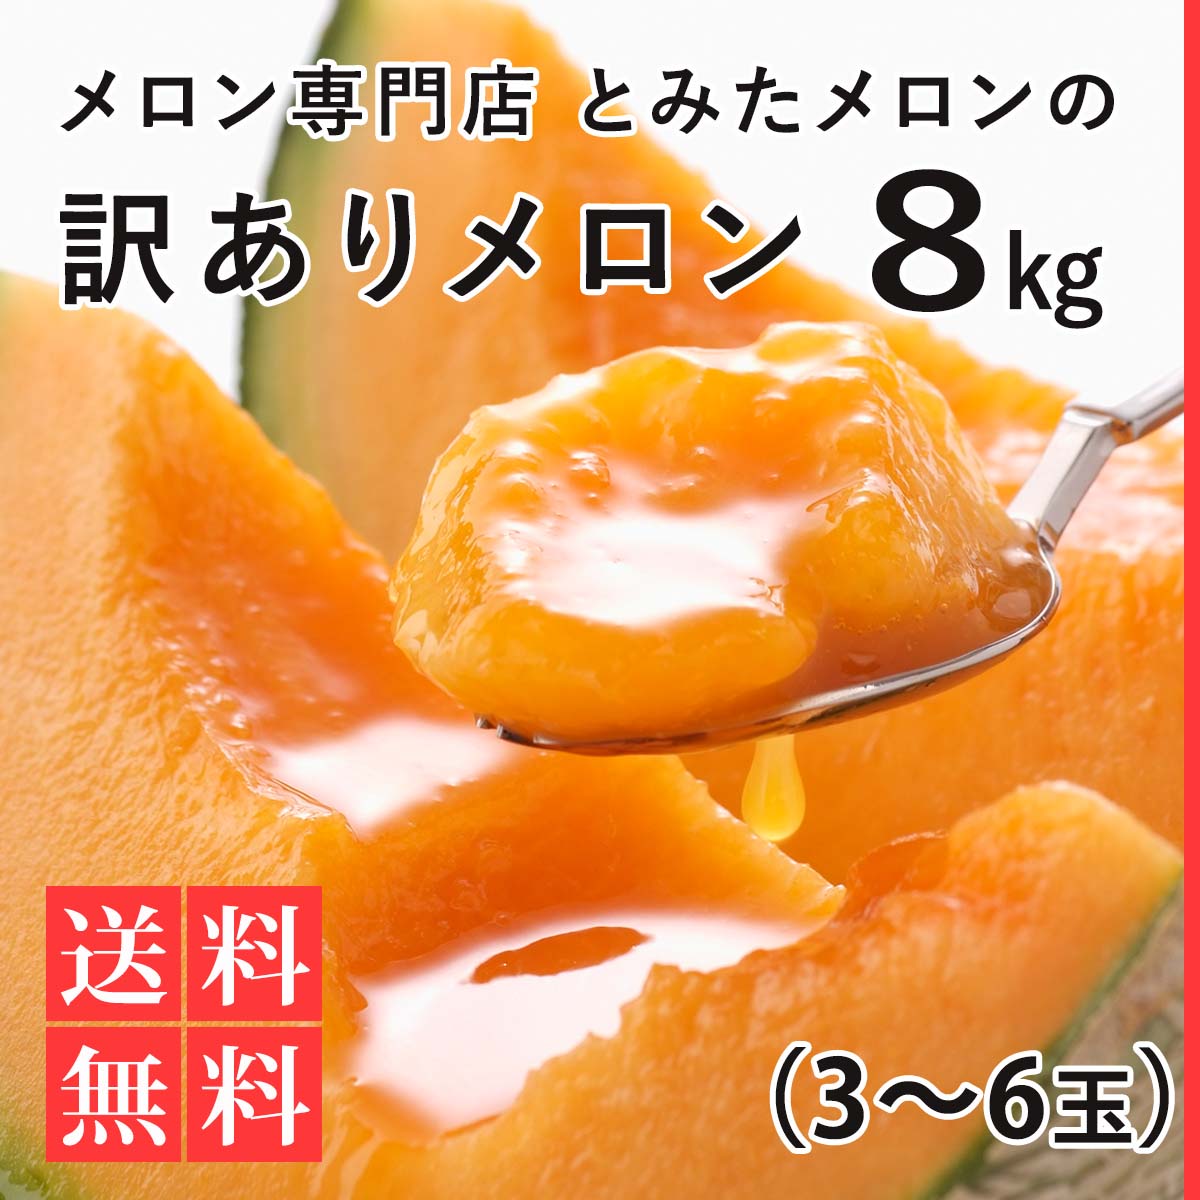 メロン 北海道 訳ありとみたメロン 8kg (3〜6玉) 送料無料 訳あり お取り寄せグルメ 果物 フルーツ とみたメロンハウス ハネメロン